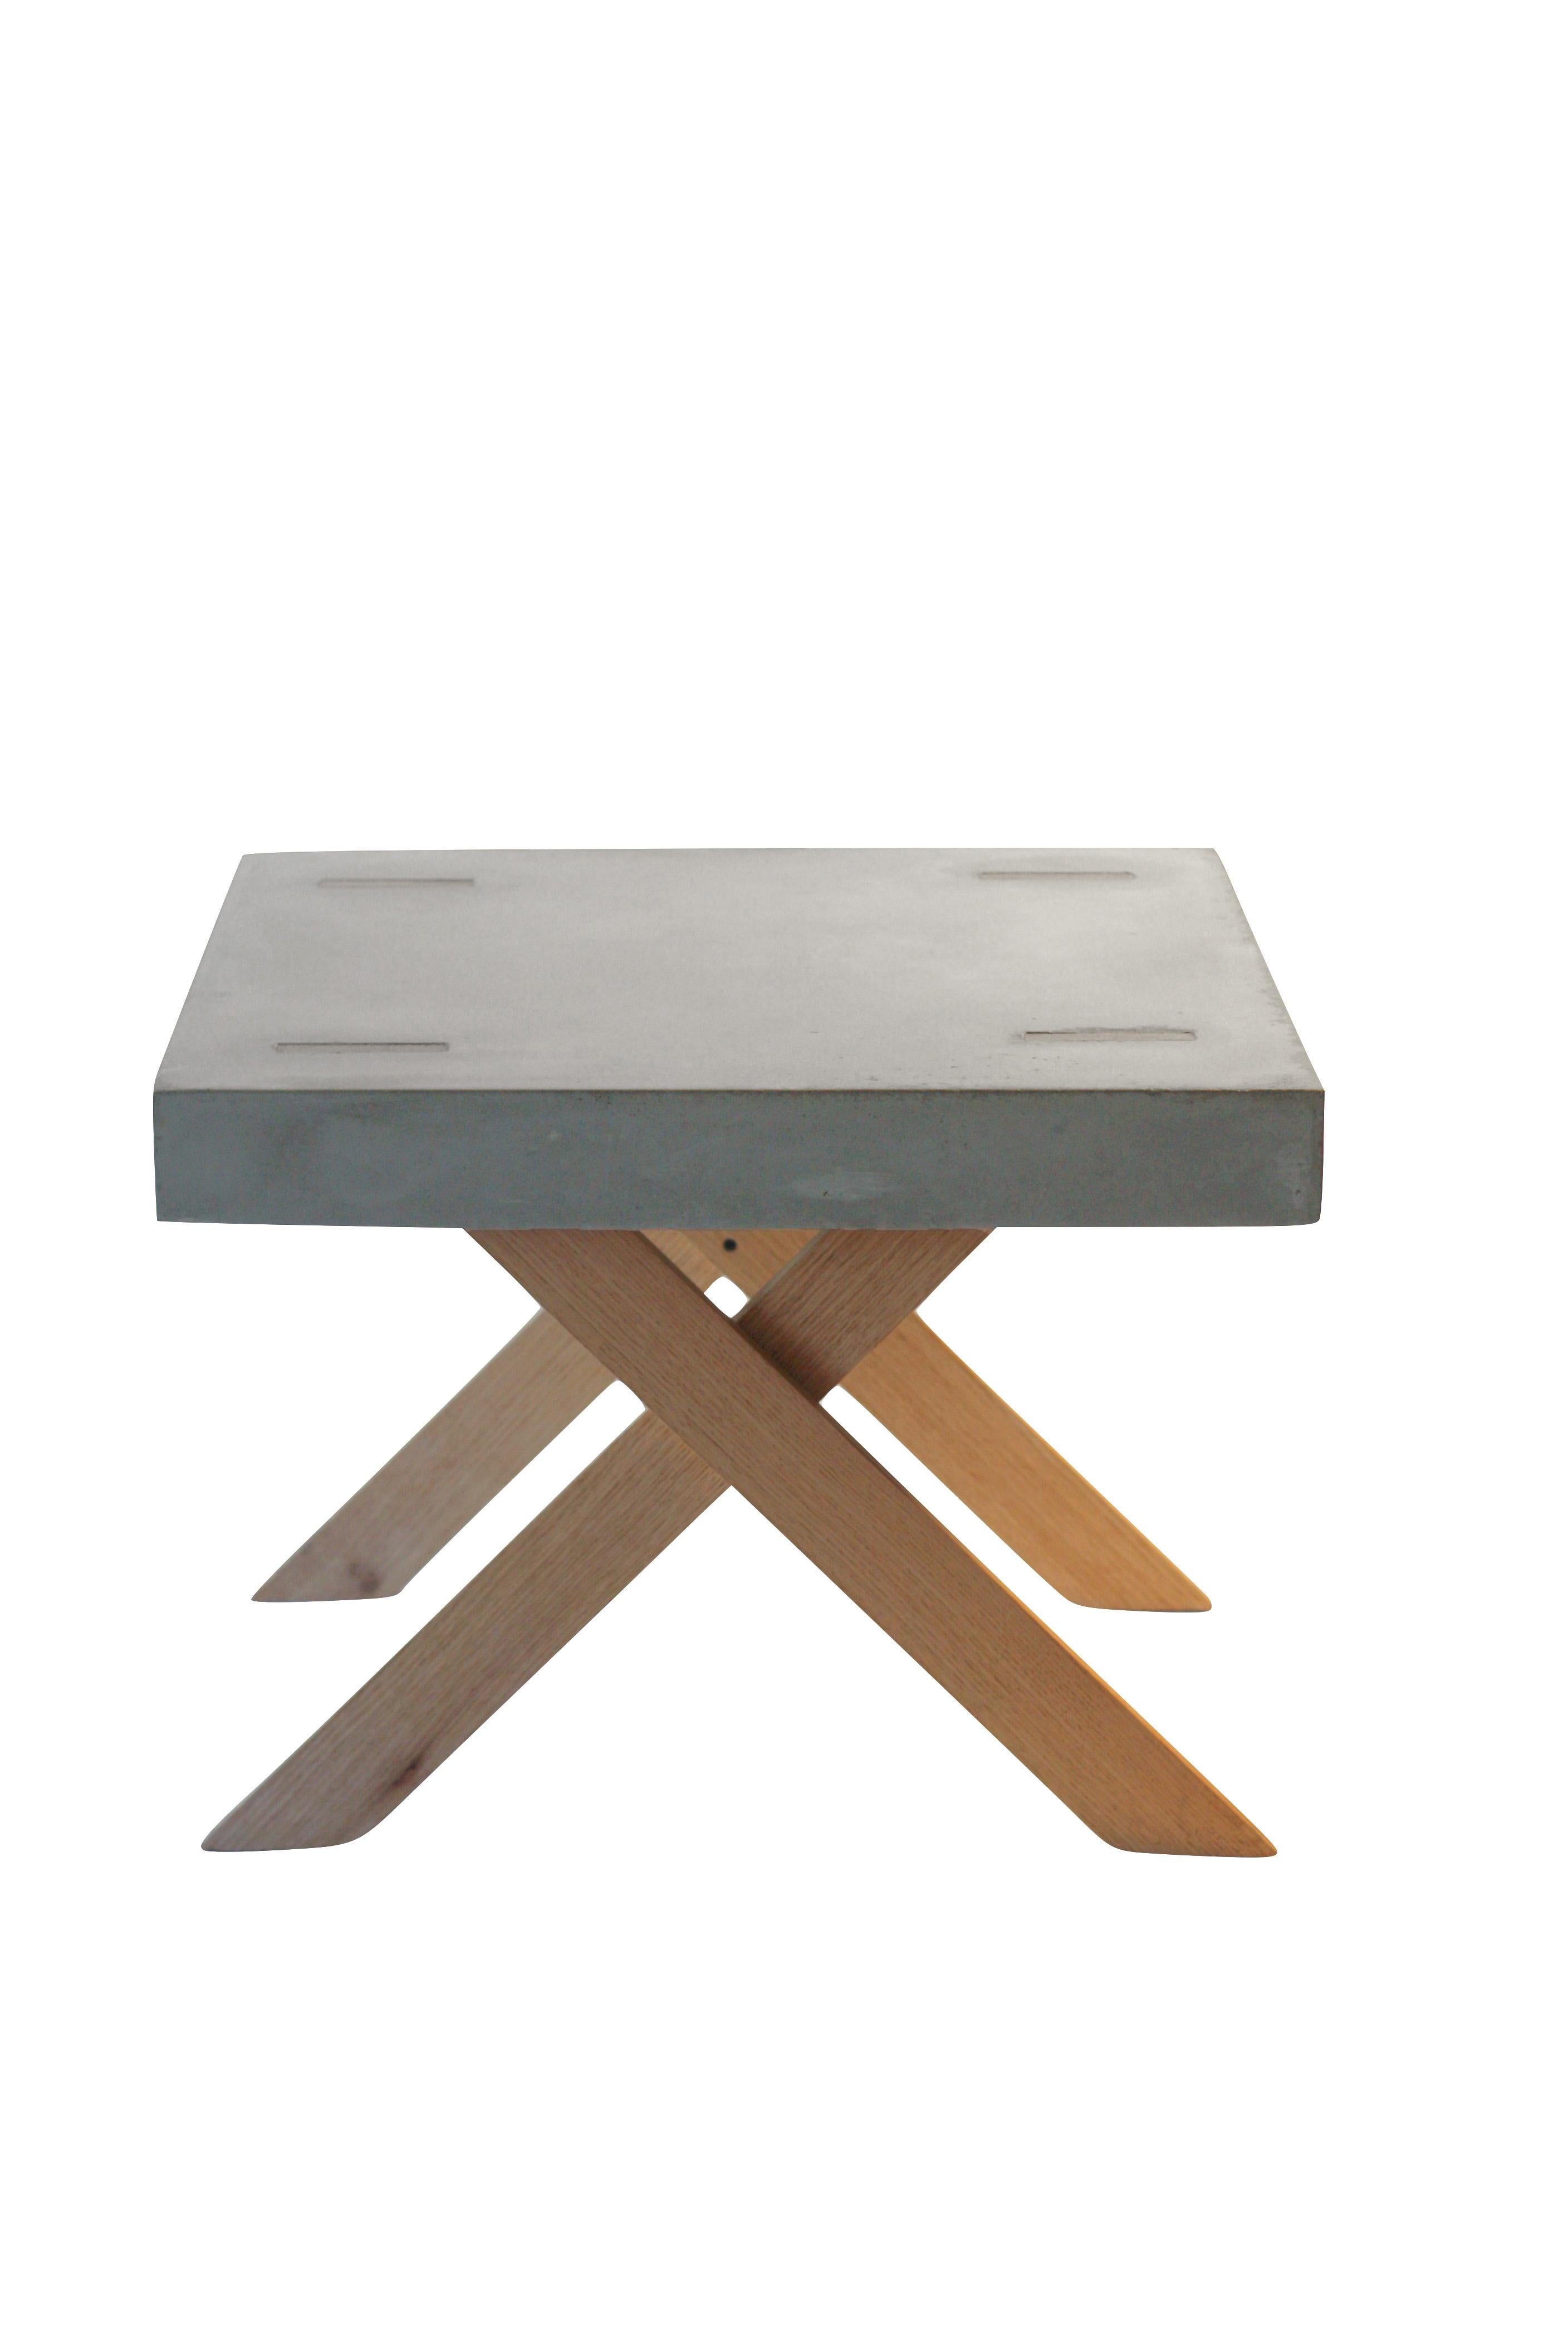 Minimalist Concrete XX Table For Sale